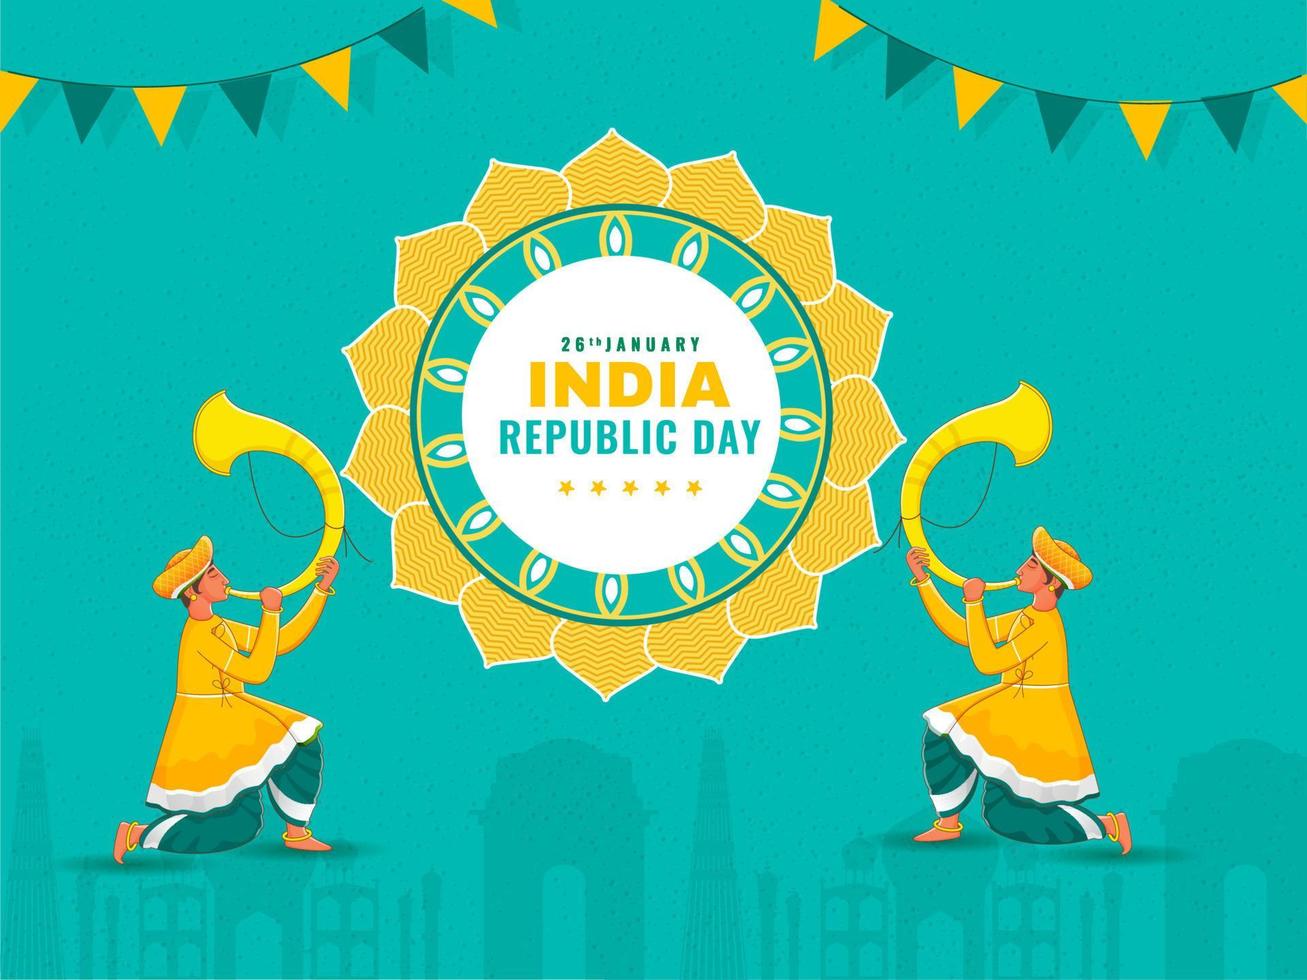 Dia 26 janeiro, Índia república dia celebração poster Projeto com tradicional tutari jogadoras ilustração e estamenha bandeiras em turquesa famoso monumentos fundo. vetor